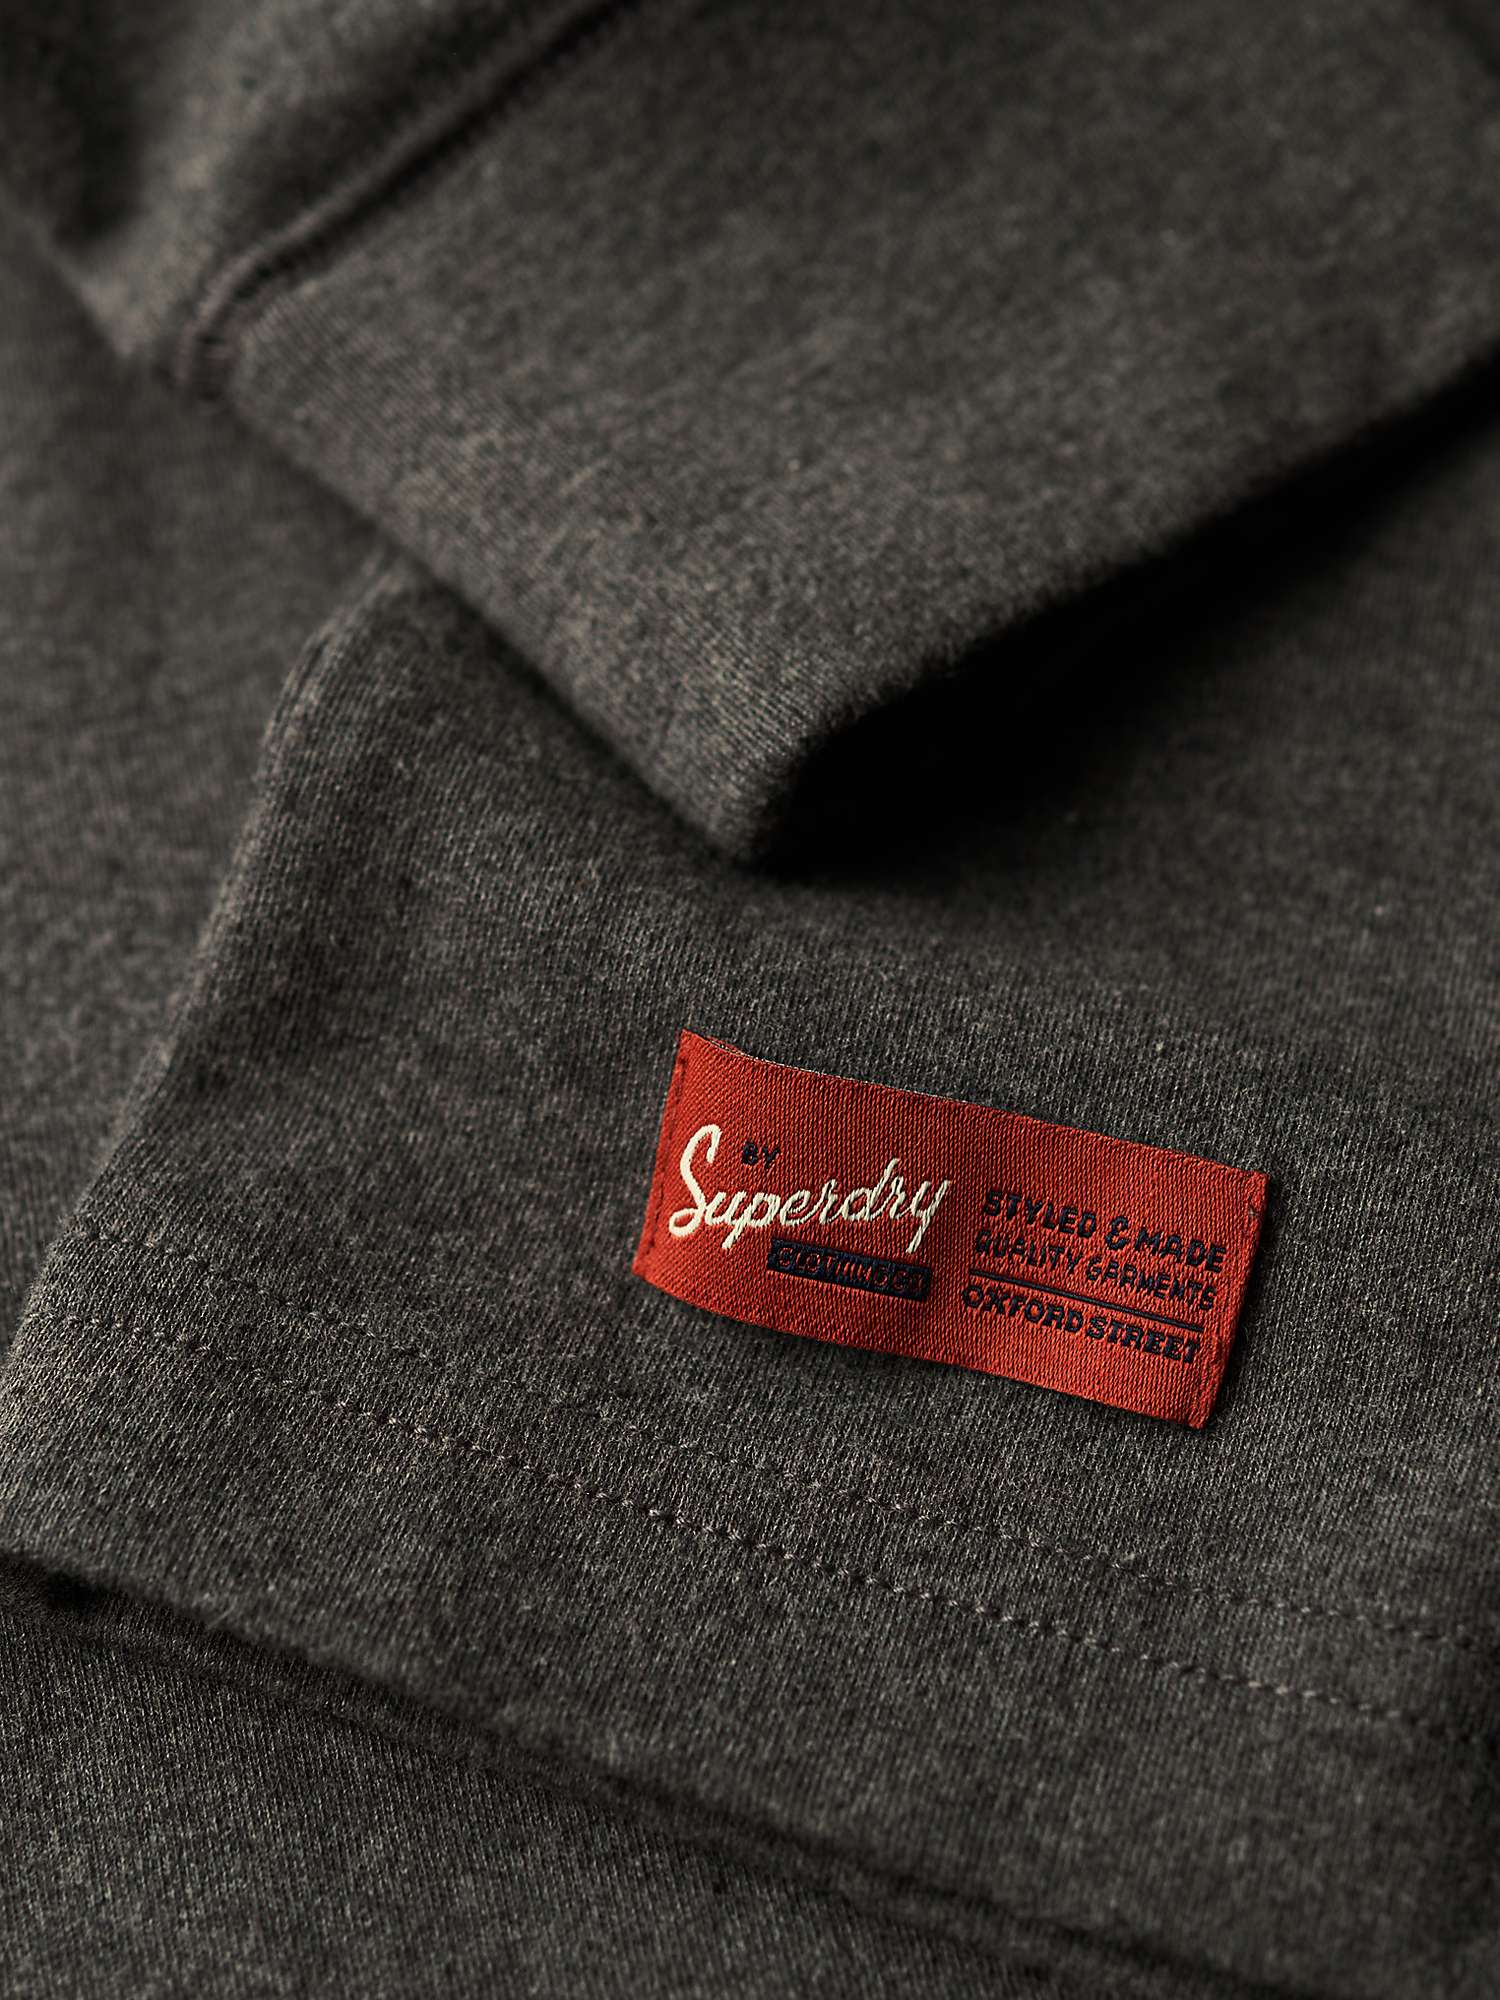 Buy Superdry Vintage Logo Embroidered Henley Top Online at johnlewis.com